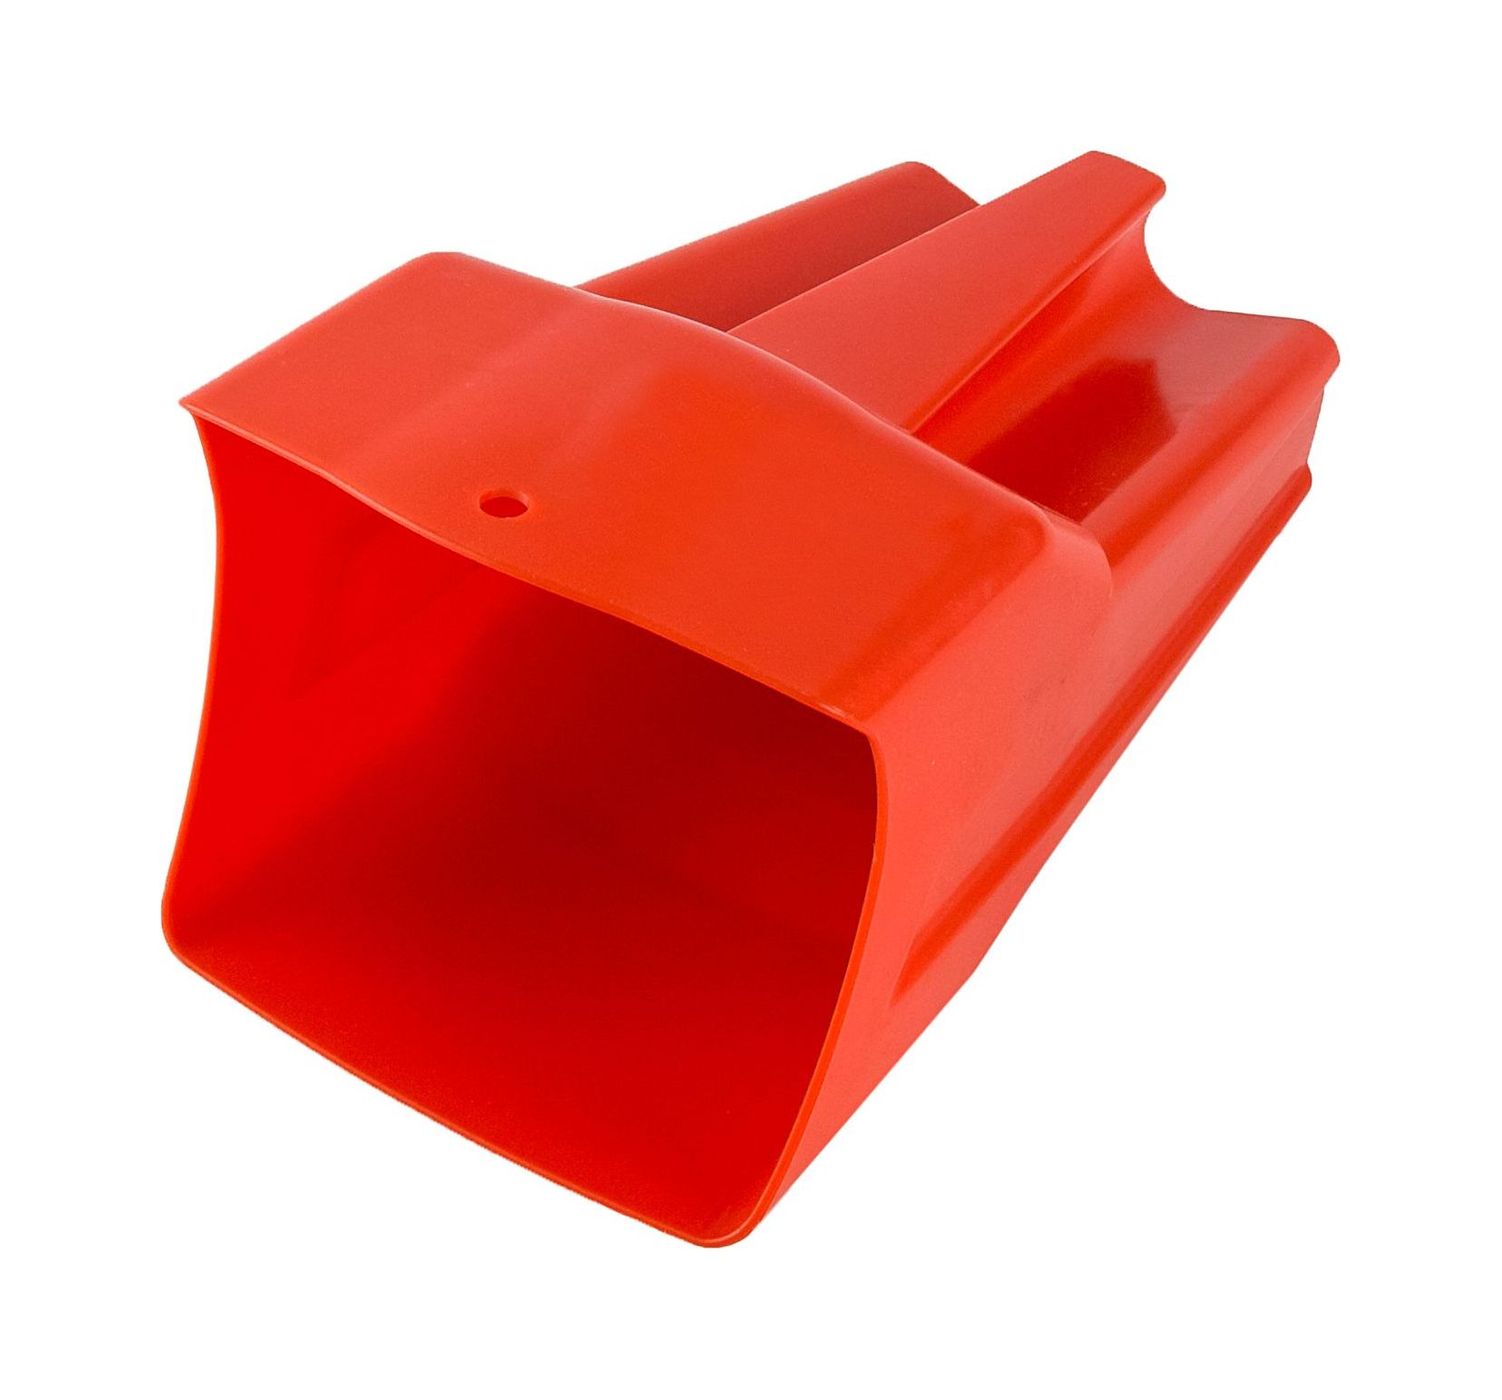 Черпак плавающий, 2 л, красный C51002 брелок для ключей пластиковый красный с цепочкой 2560606000 red